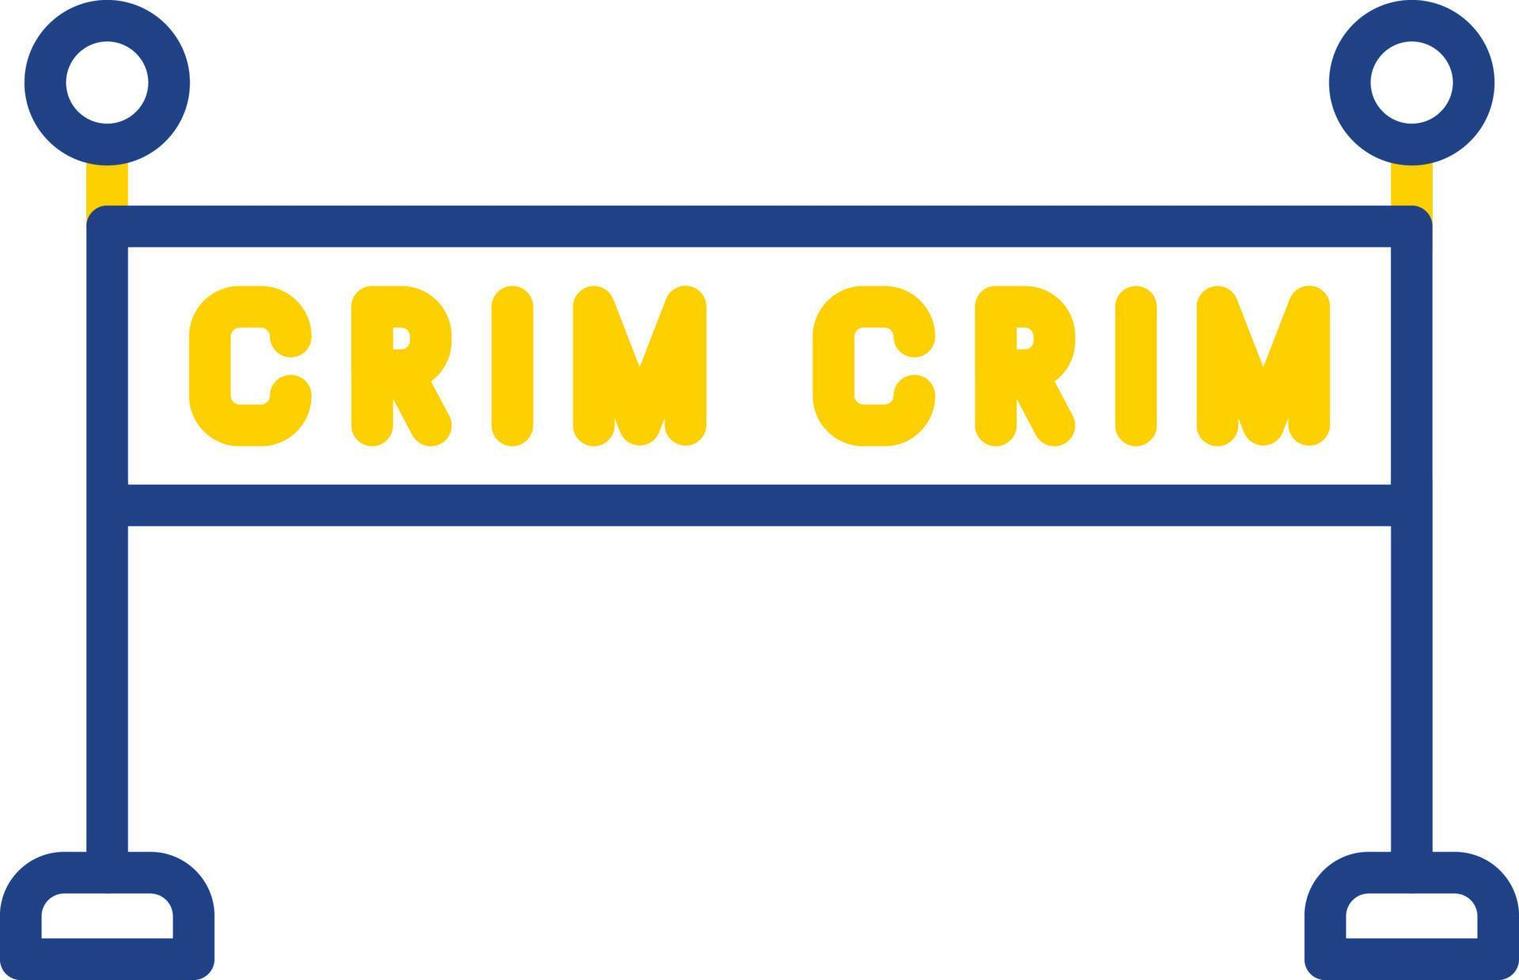 Crime Scene Vector Icon Design